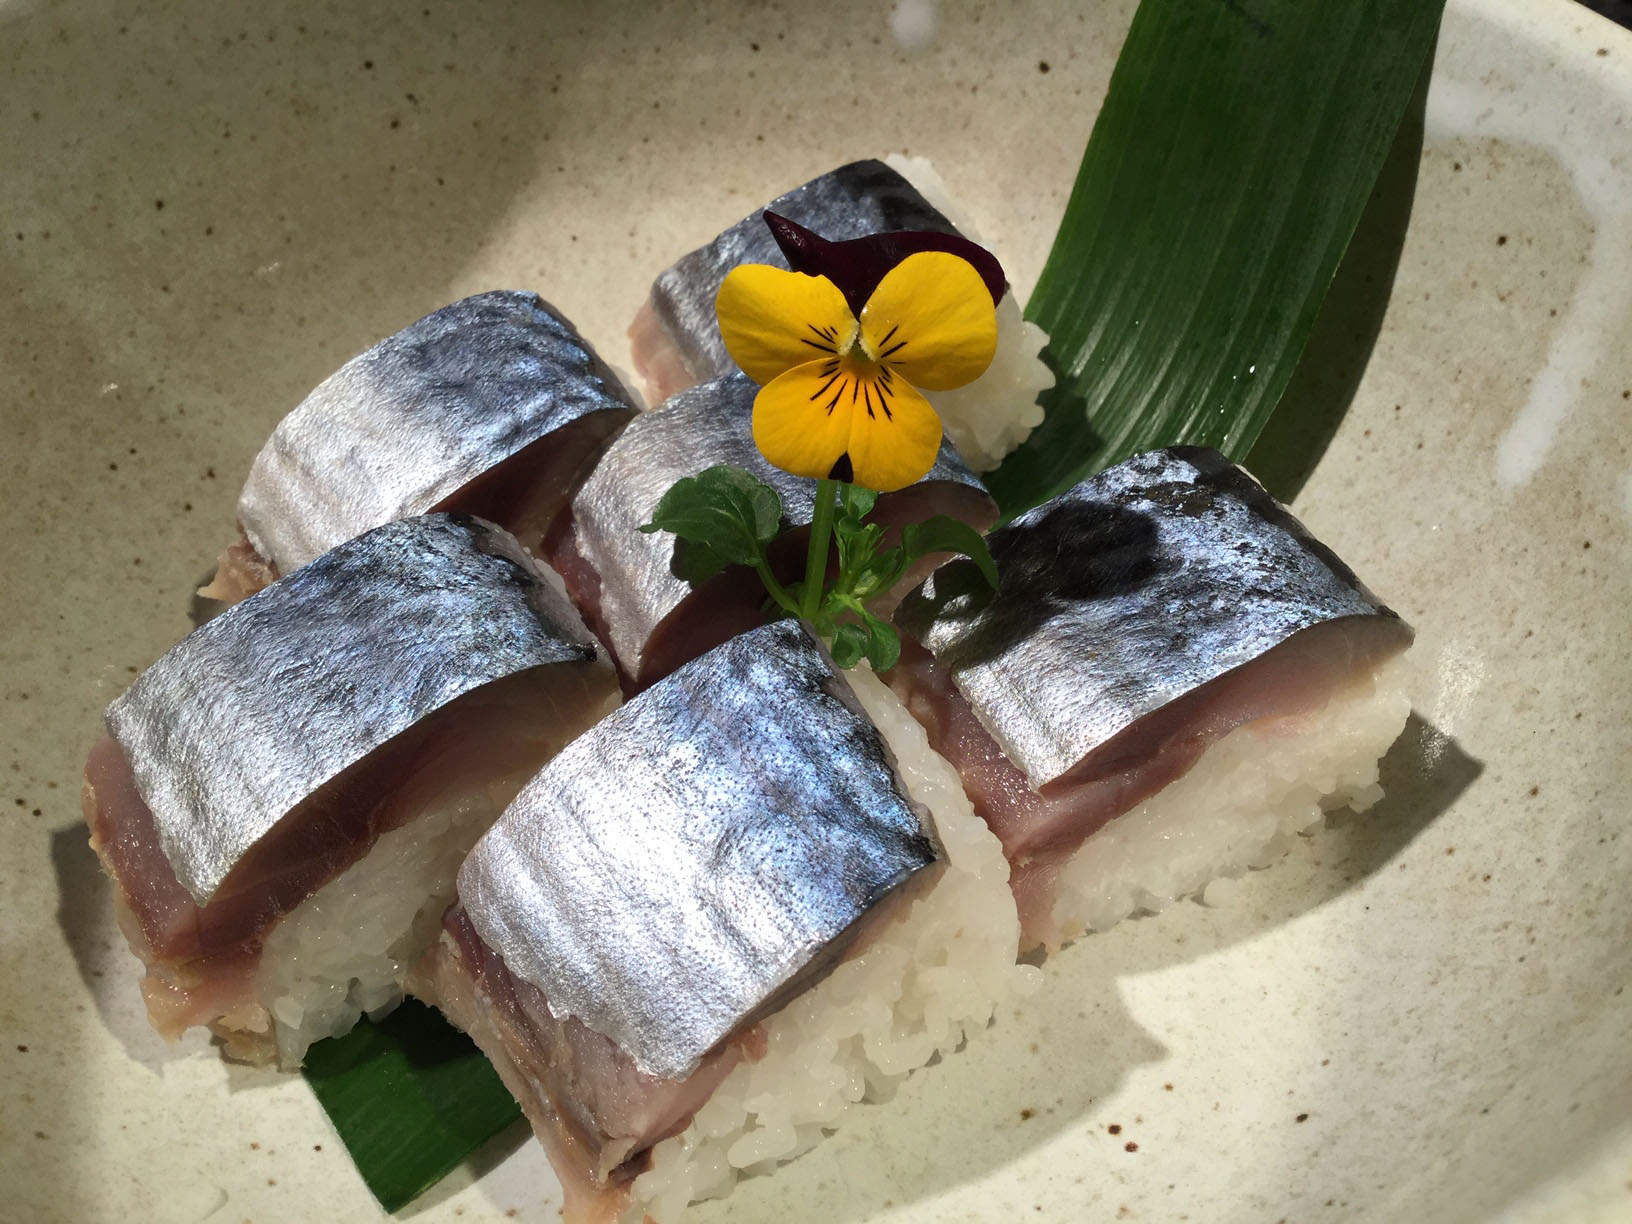 吉原的料理世界 和食的世界 5 巧制腌鱼 美味且能长期保存 客观日本